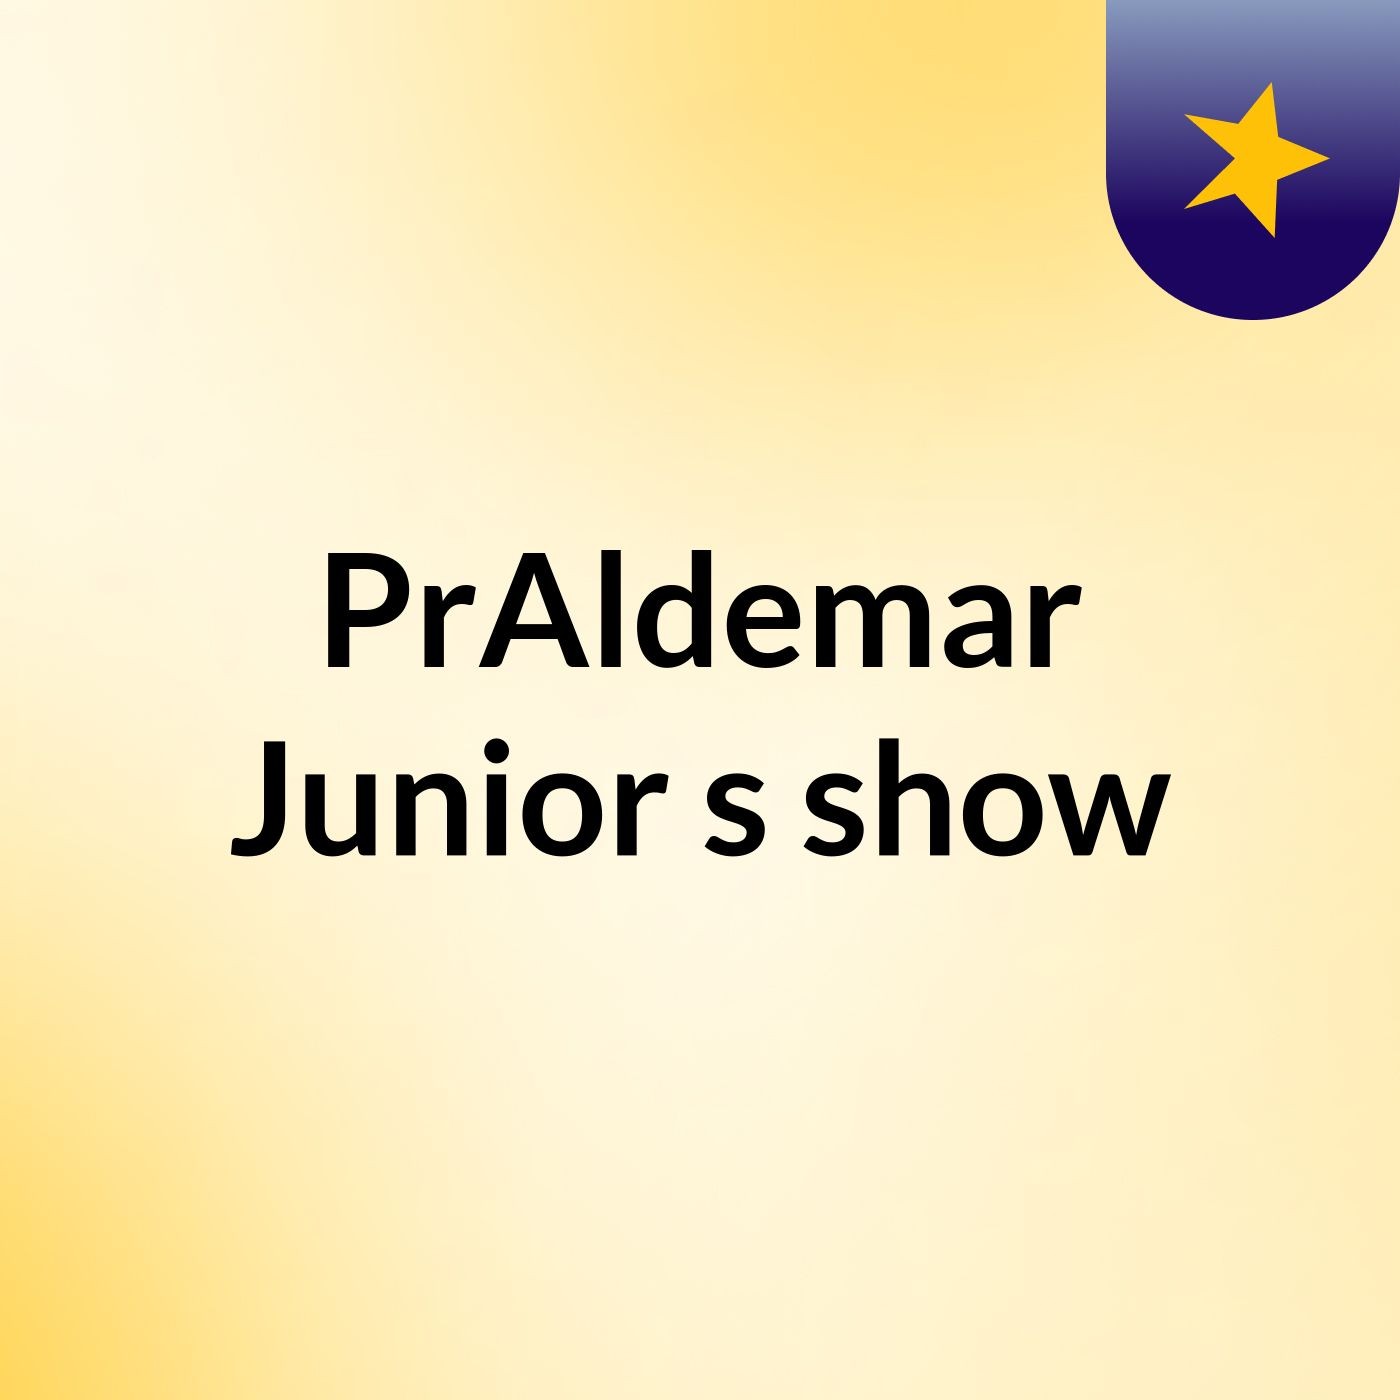 PrAldemar Junior's show